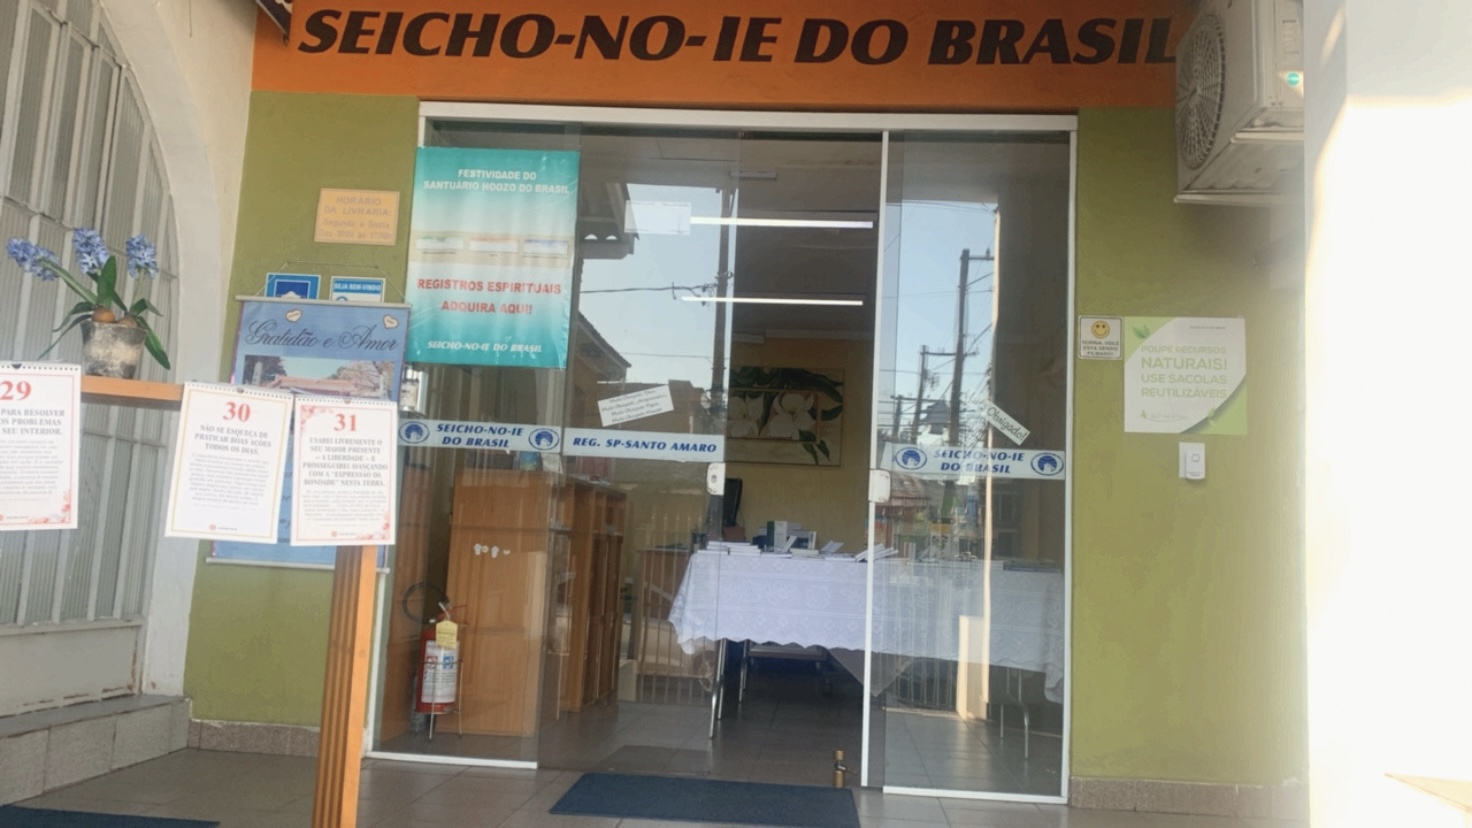 sp santo amaro regional em santo amaro SEICHO-NO-IE DO BRASIL - Regionais em Português